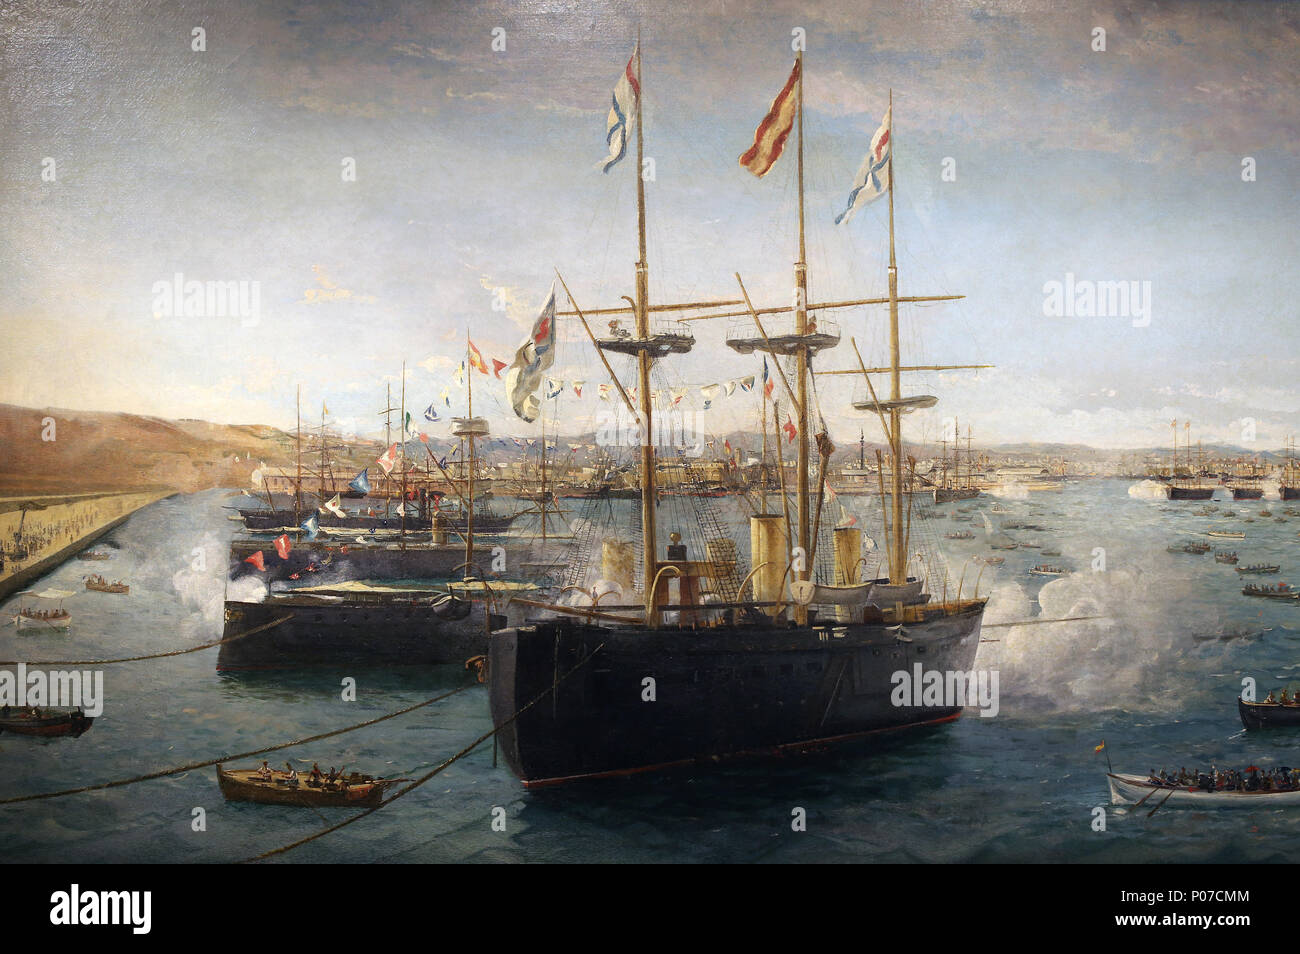 Die ausländischen Flotten in Barcelona im Jahre 1888. Kriegsschiffe. Malerei von Emilio Sivilla. Detail. Barcelona Maritime Museum. Spanien. Stockfoto